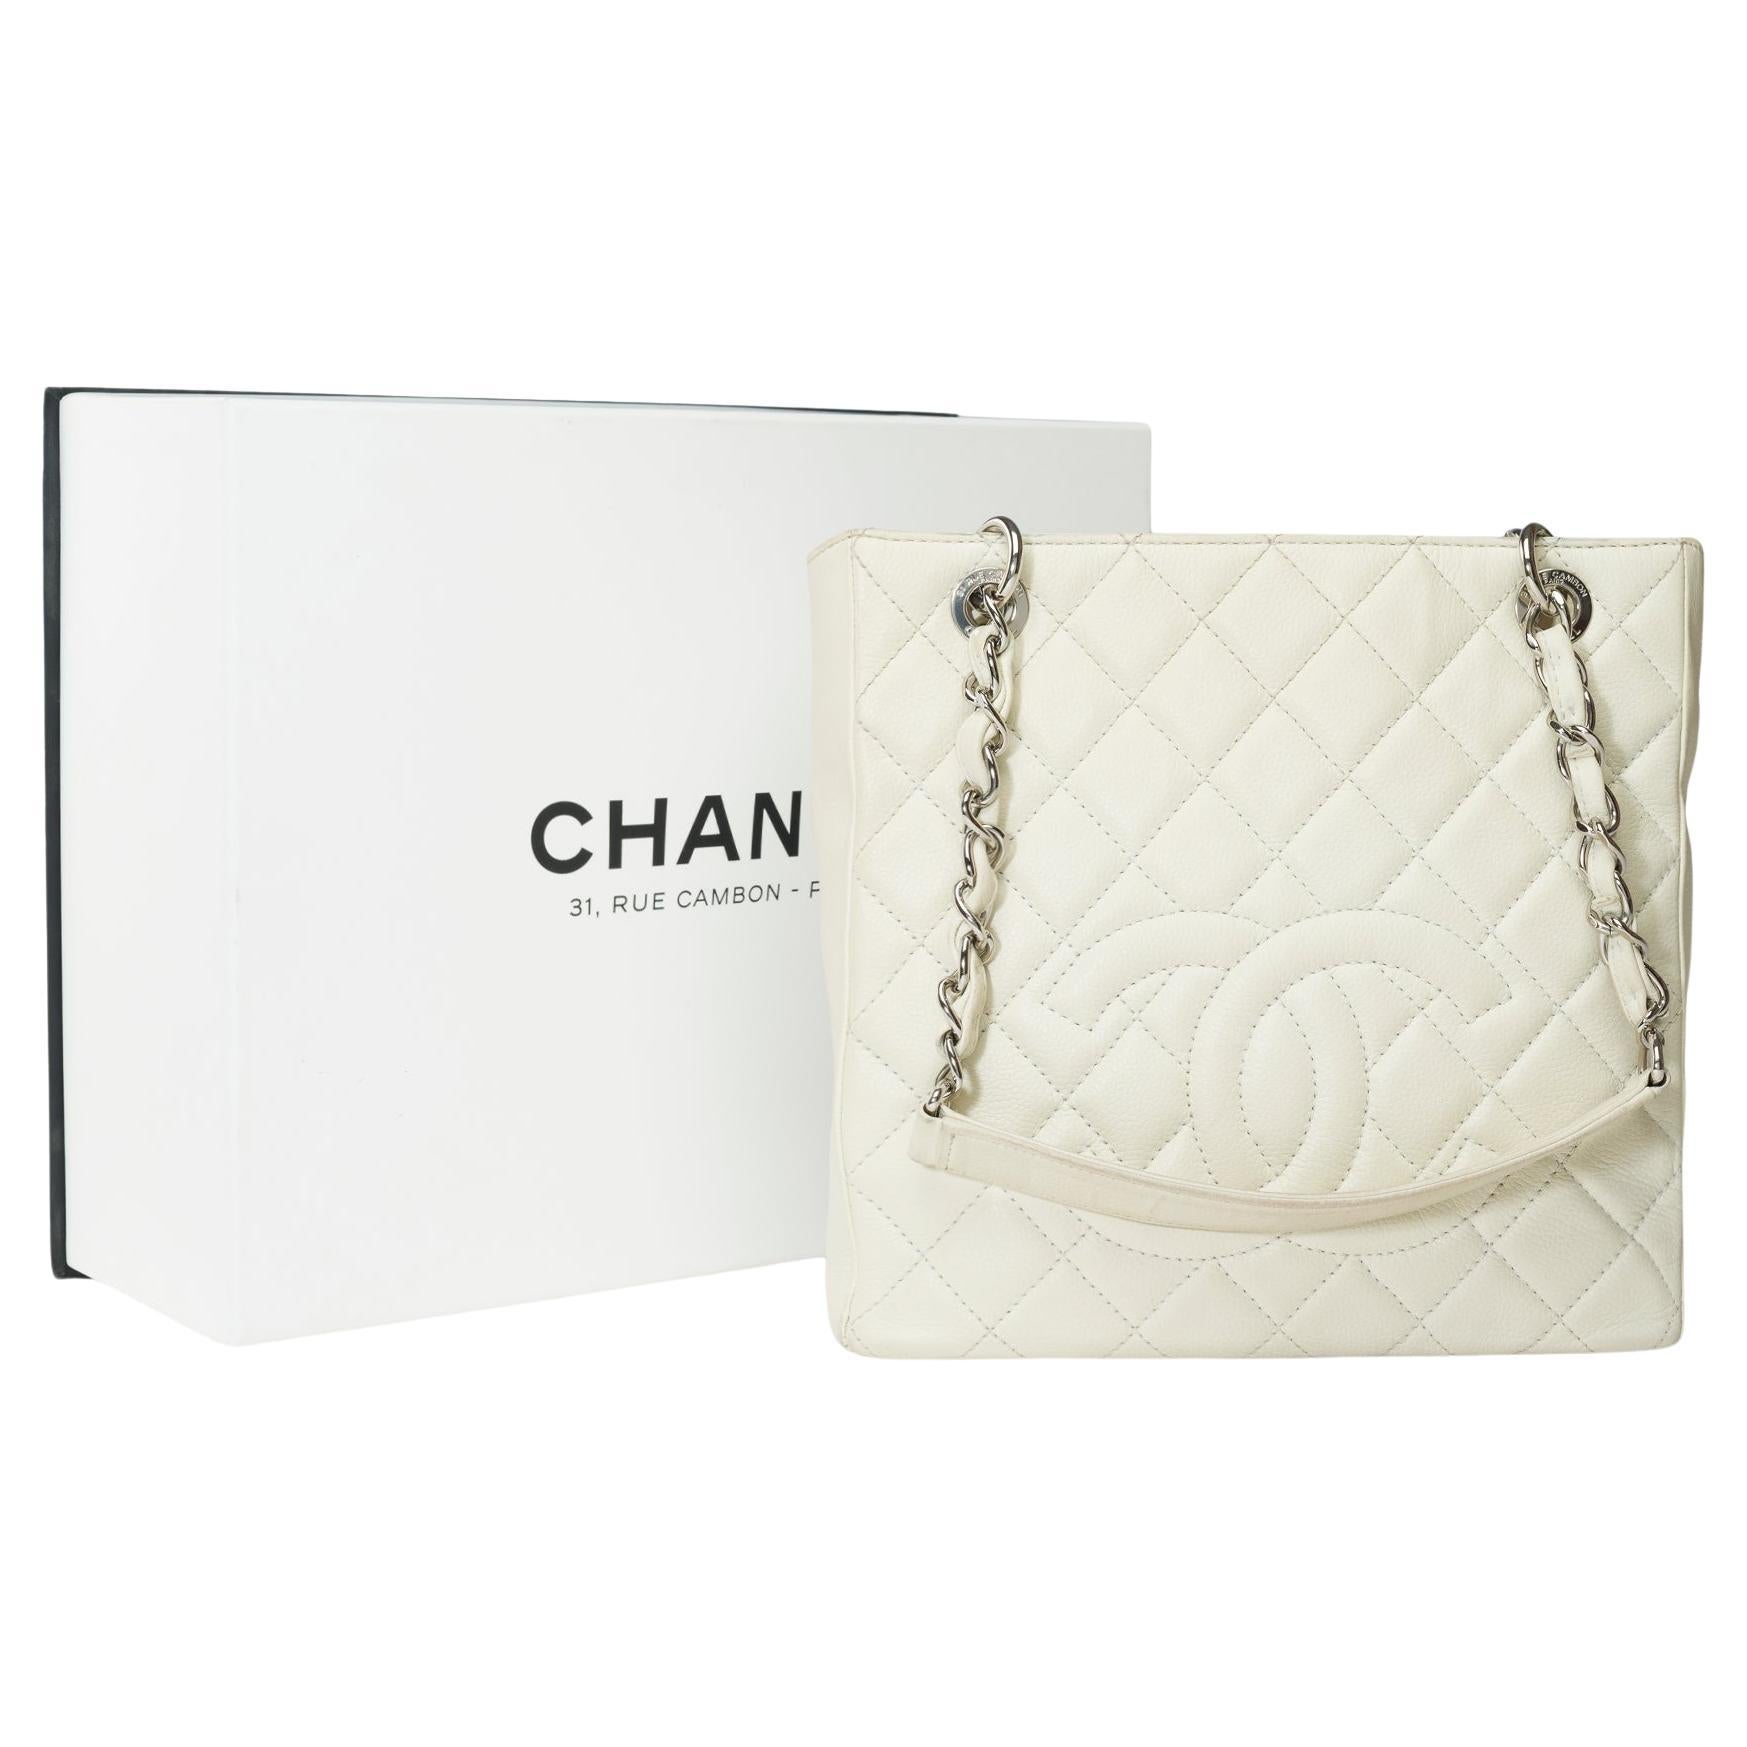  Chanel Petit Shopping Tote bag (PST) en cuir matelassé Off-White Caviar, SHW en vente